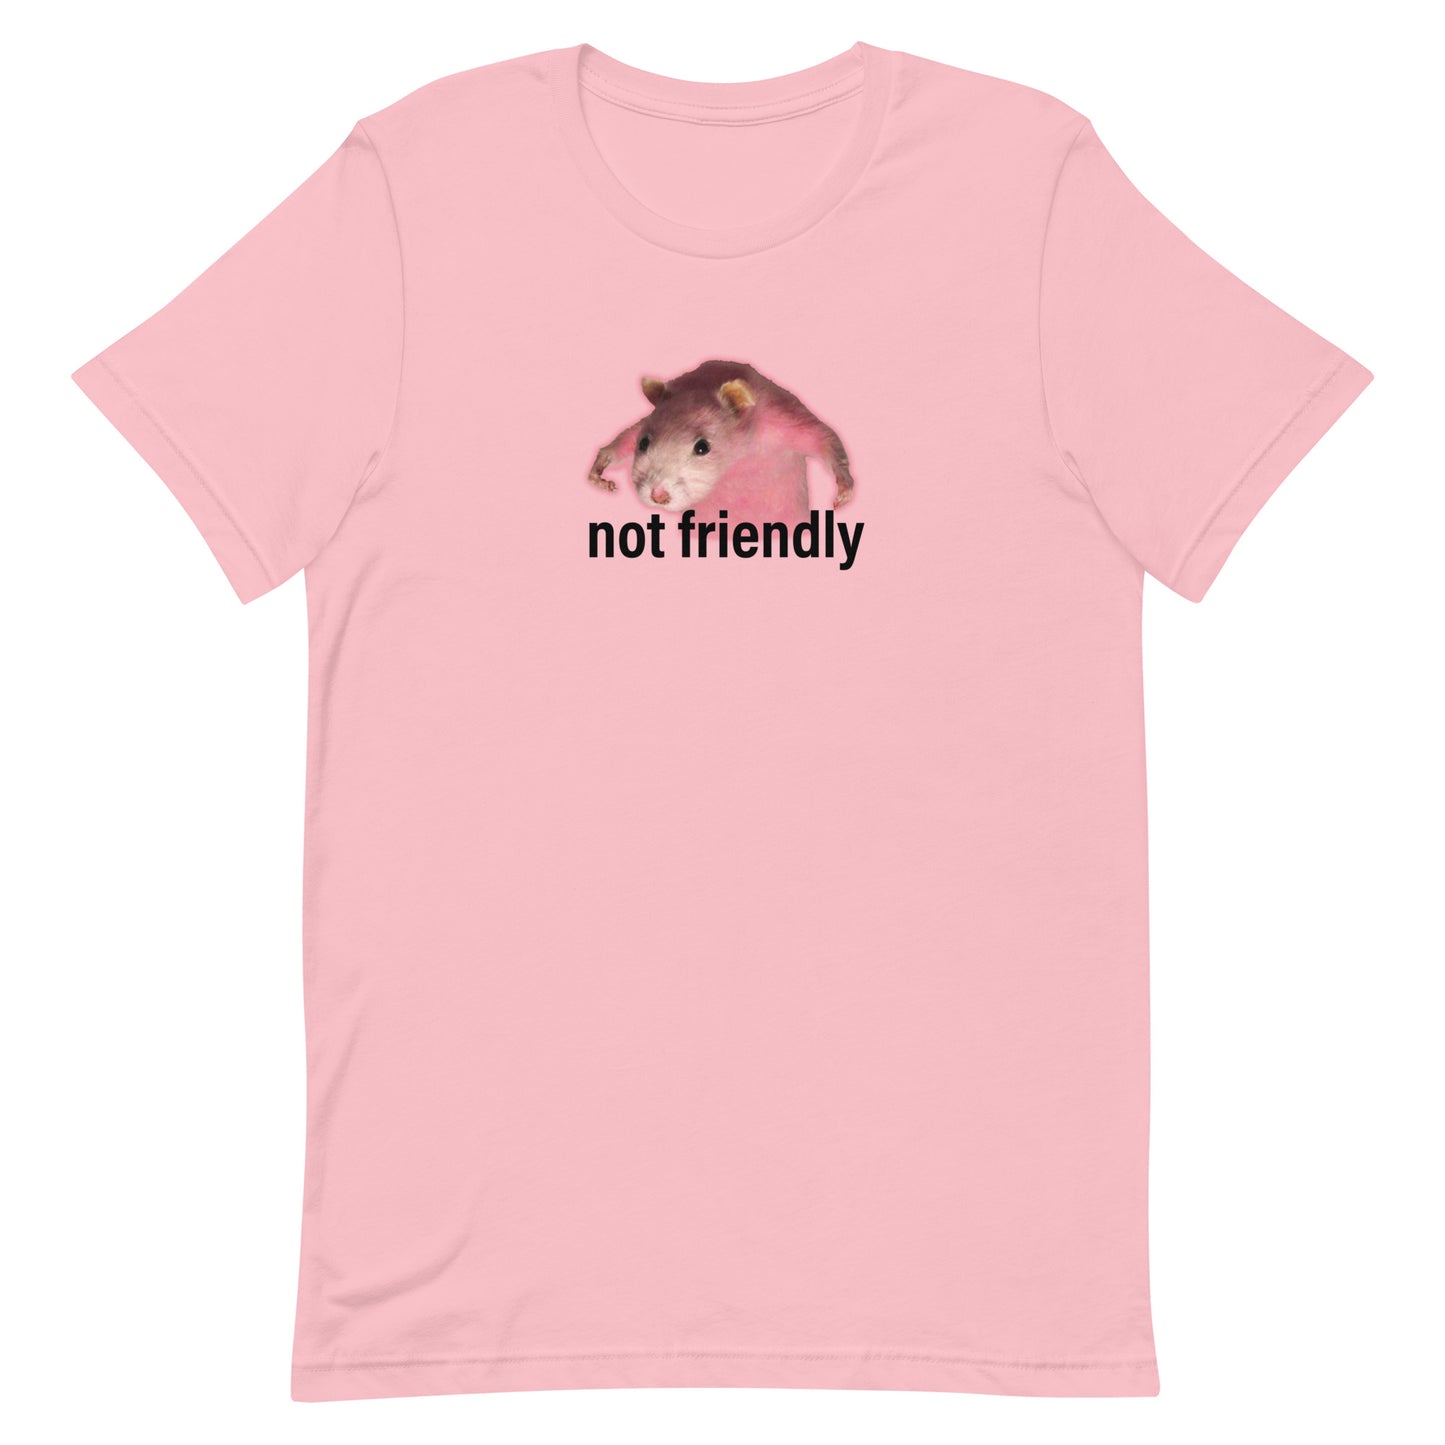 Not Friendly Unisex t-shirt